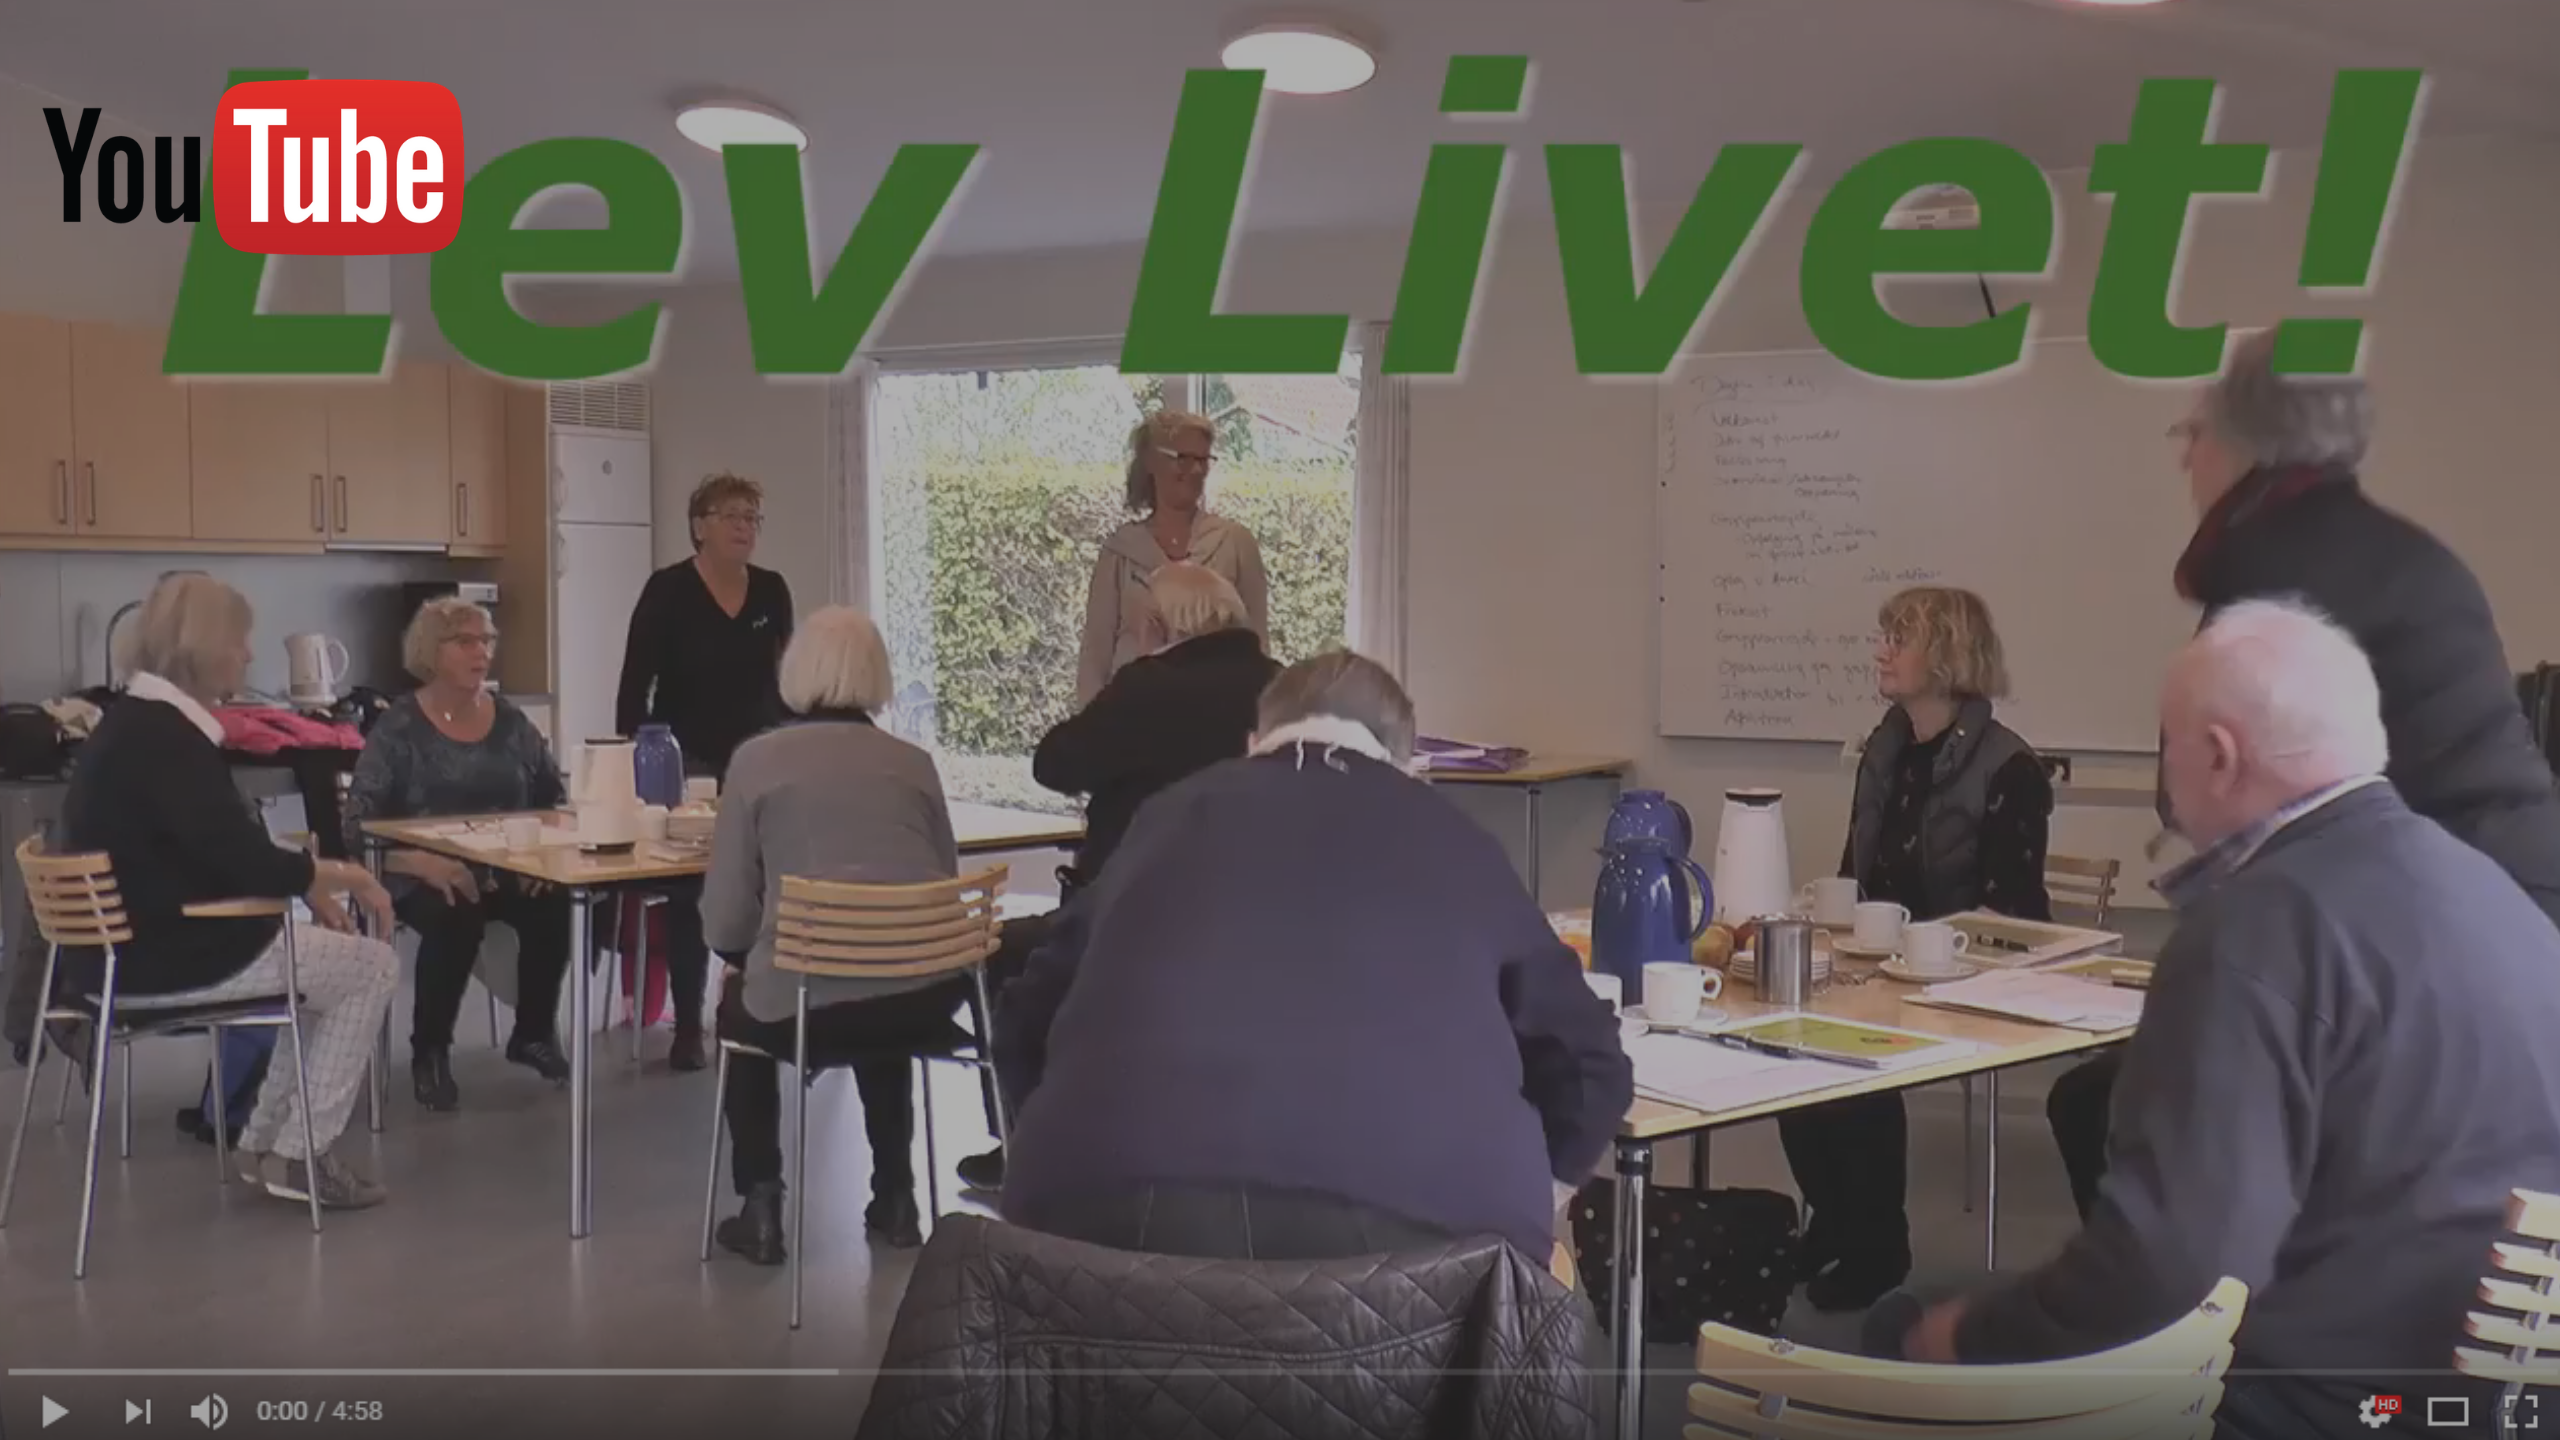 Billedet viser ældre mennesker siddende ved borde. Billedet er et link til en You-Tube-video fra første pilotforløb i LEV LIVET fra 2017.